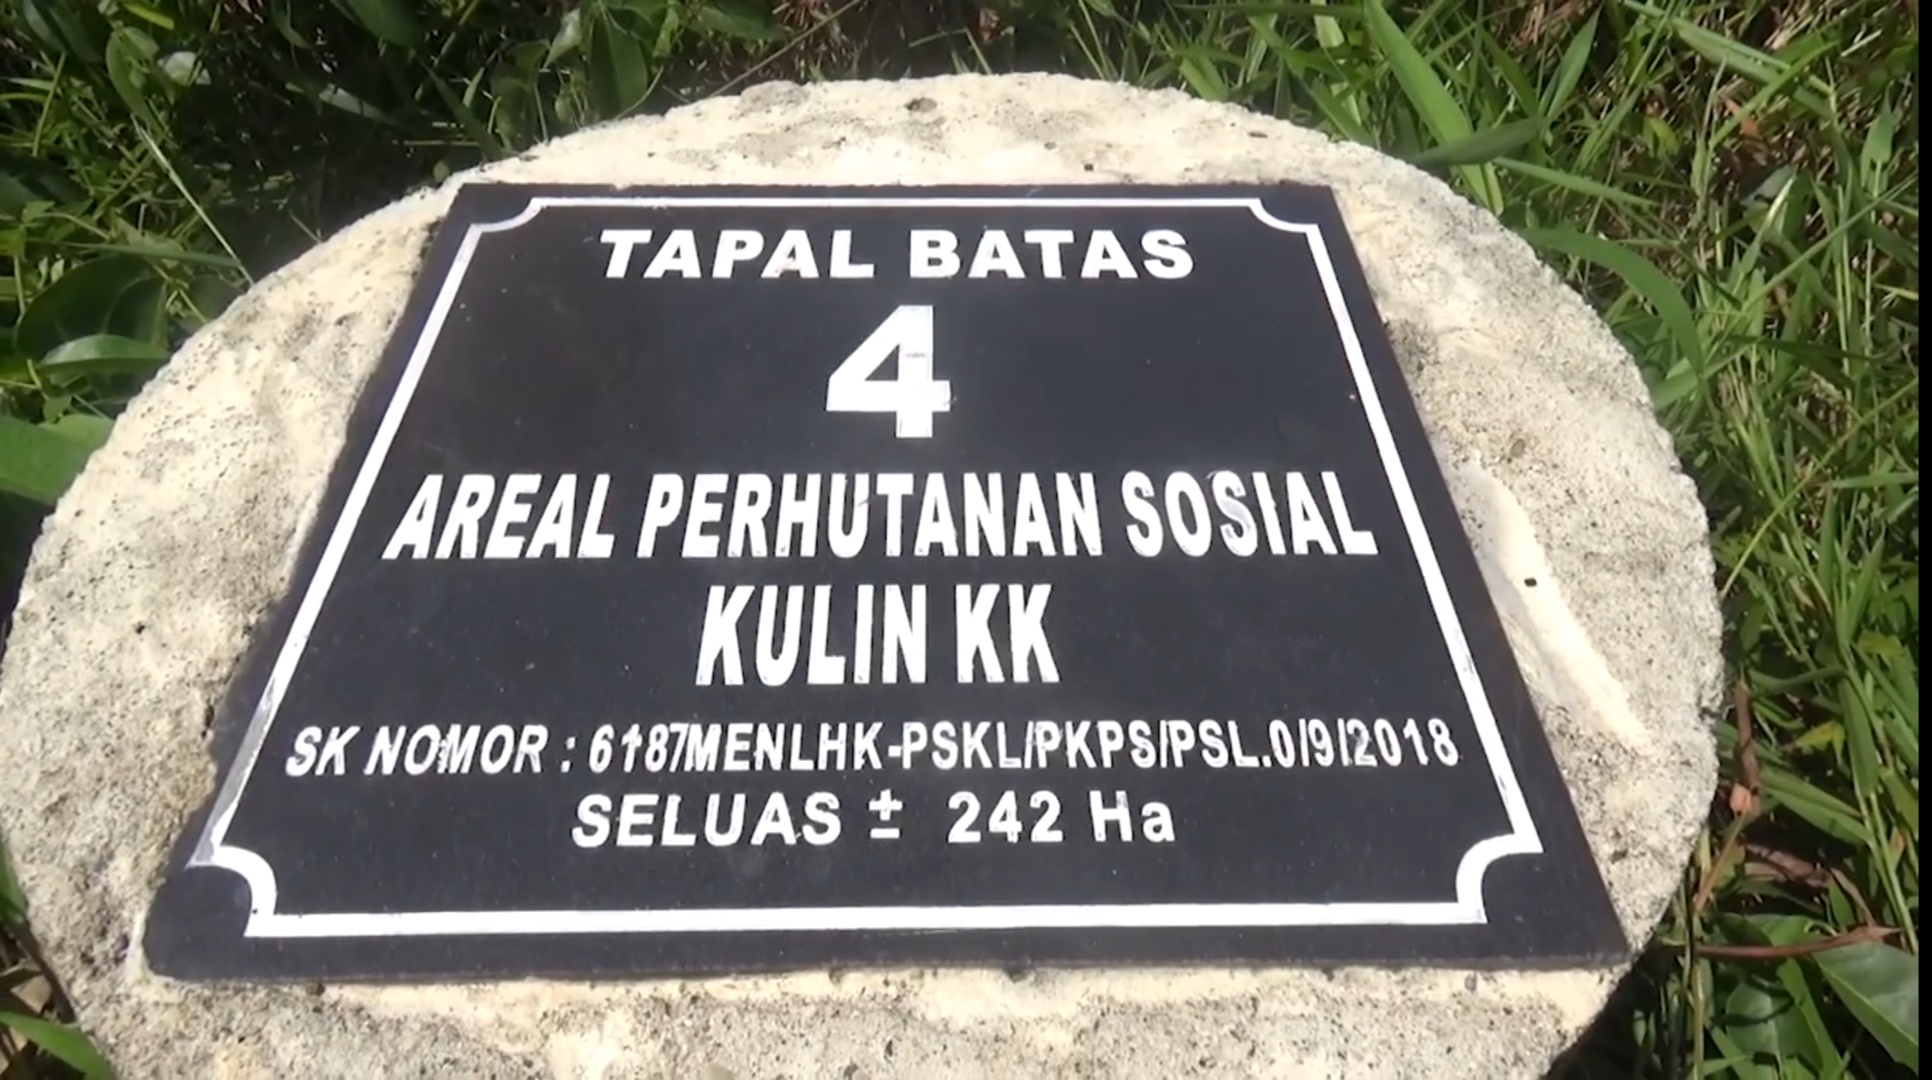 Tapal batas kemitraan perhutanan sosial yang diberikan KLHK kepada Kelompok Tani Nipah uas 242 hektar. Foto: Ayat S Karokaro/ Mongabay Indonesia